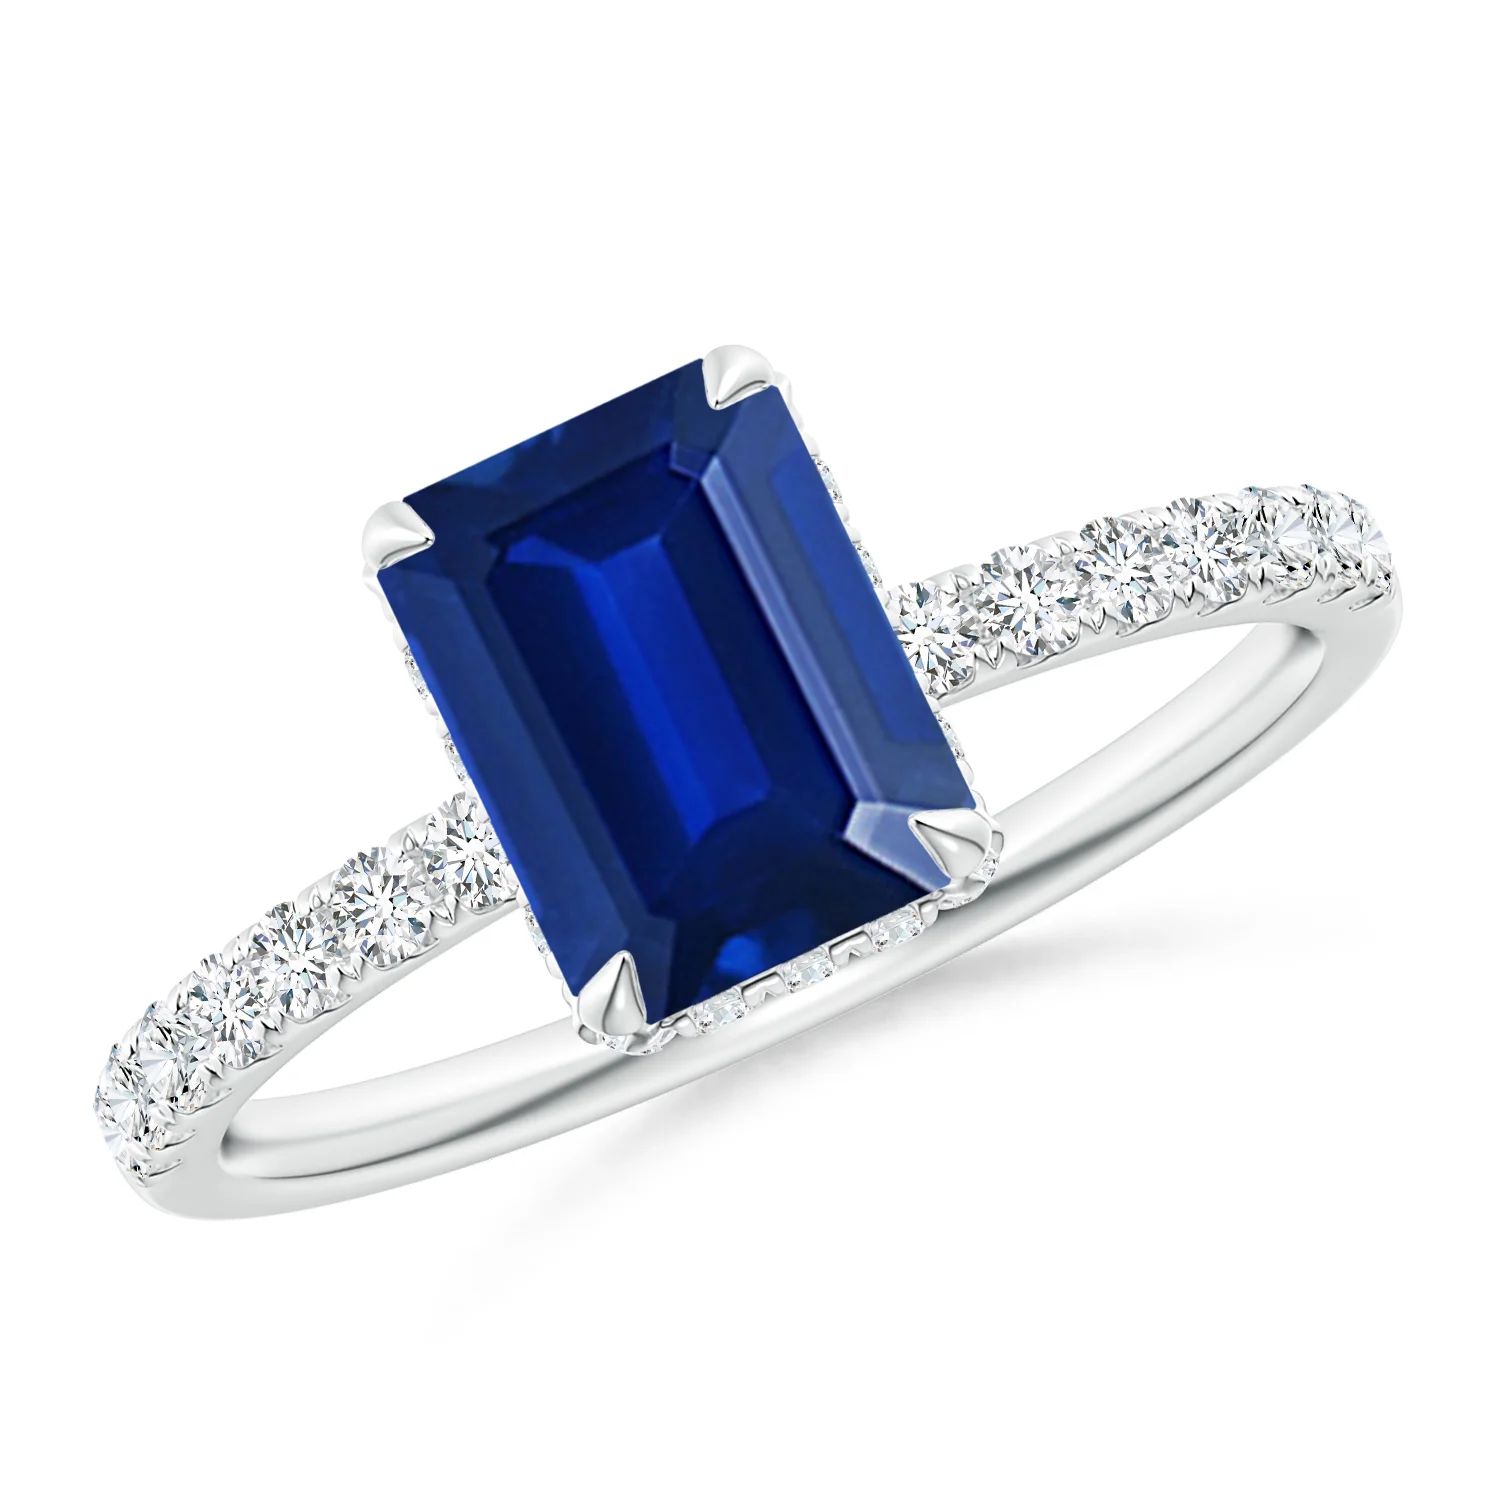 Emerald-Cut Sapphire Engagement Ring with Diamonds | Angara | Angara